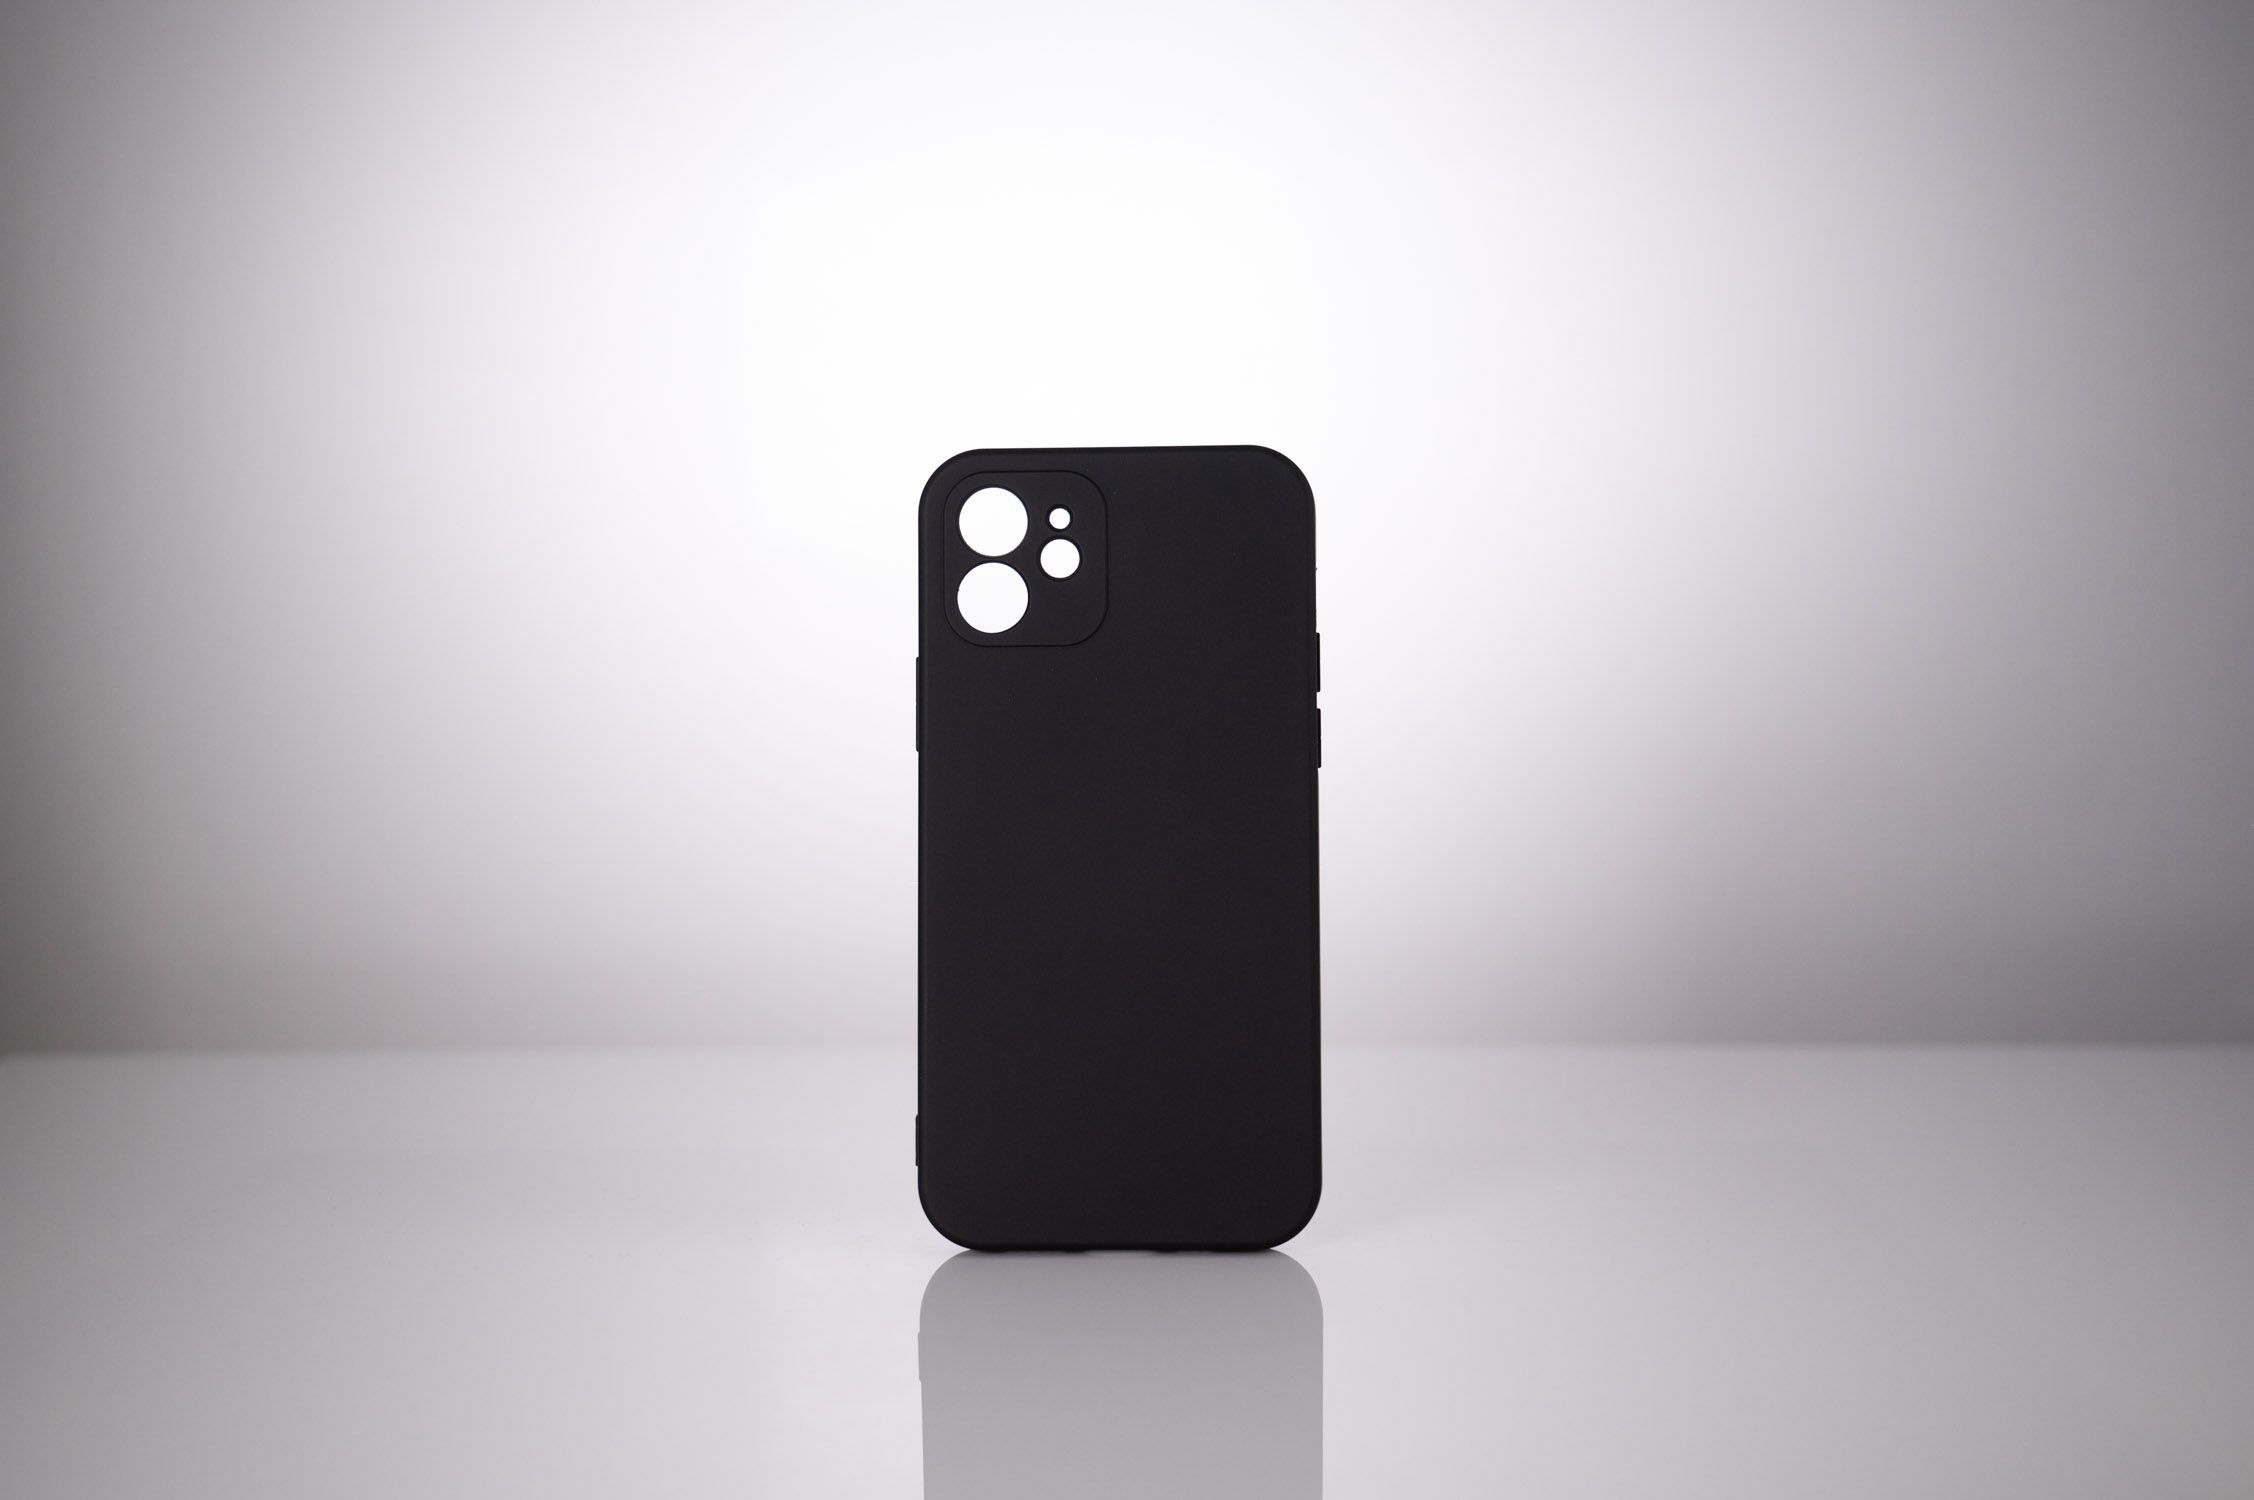 HUSA SMARTPHONE Spacer pentru Iphone 13 Mini, grosime 2mm, material flexibil silicon + interior cu microfibra, negru 